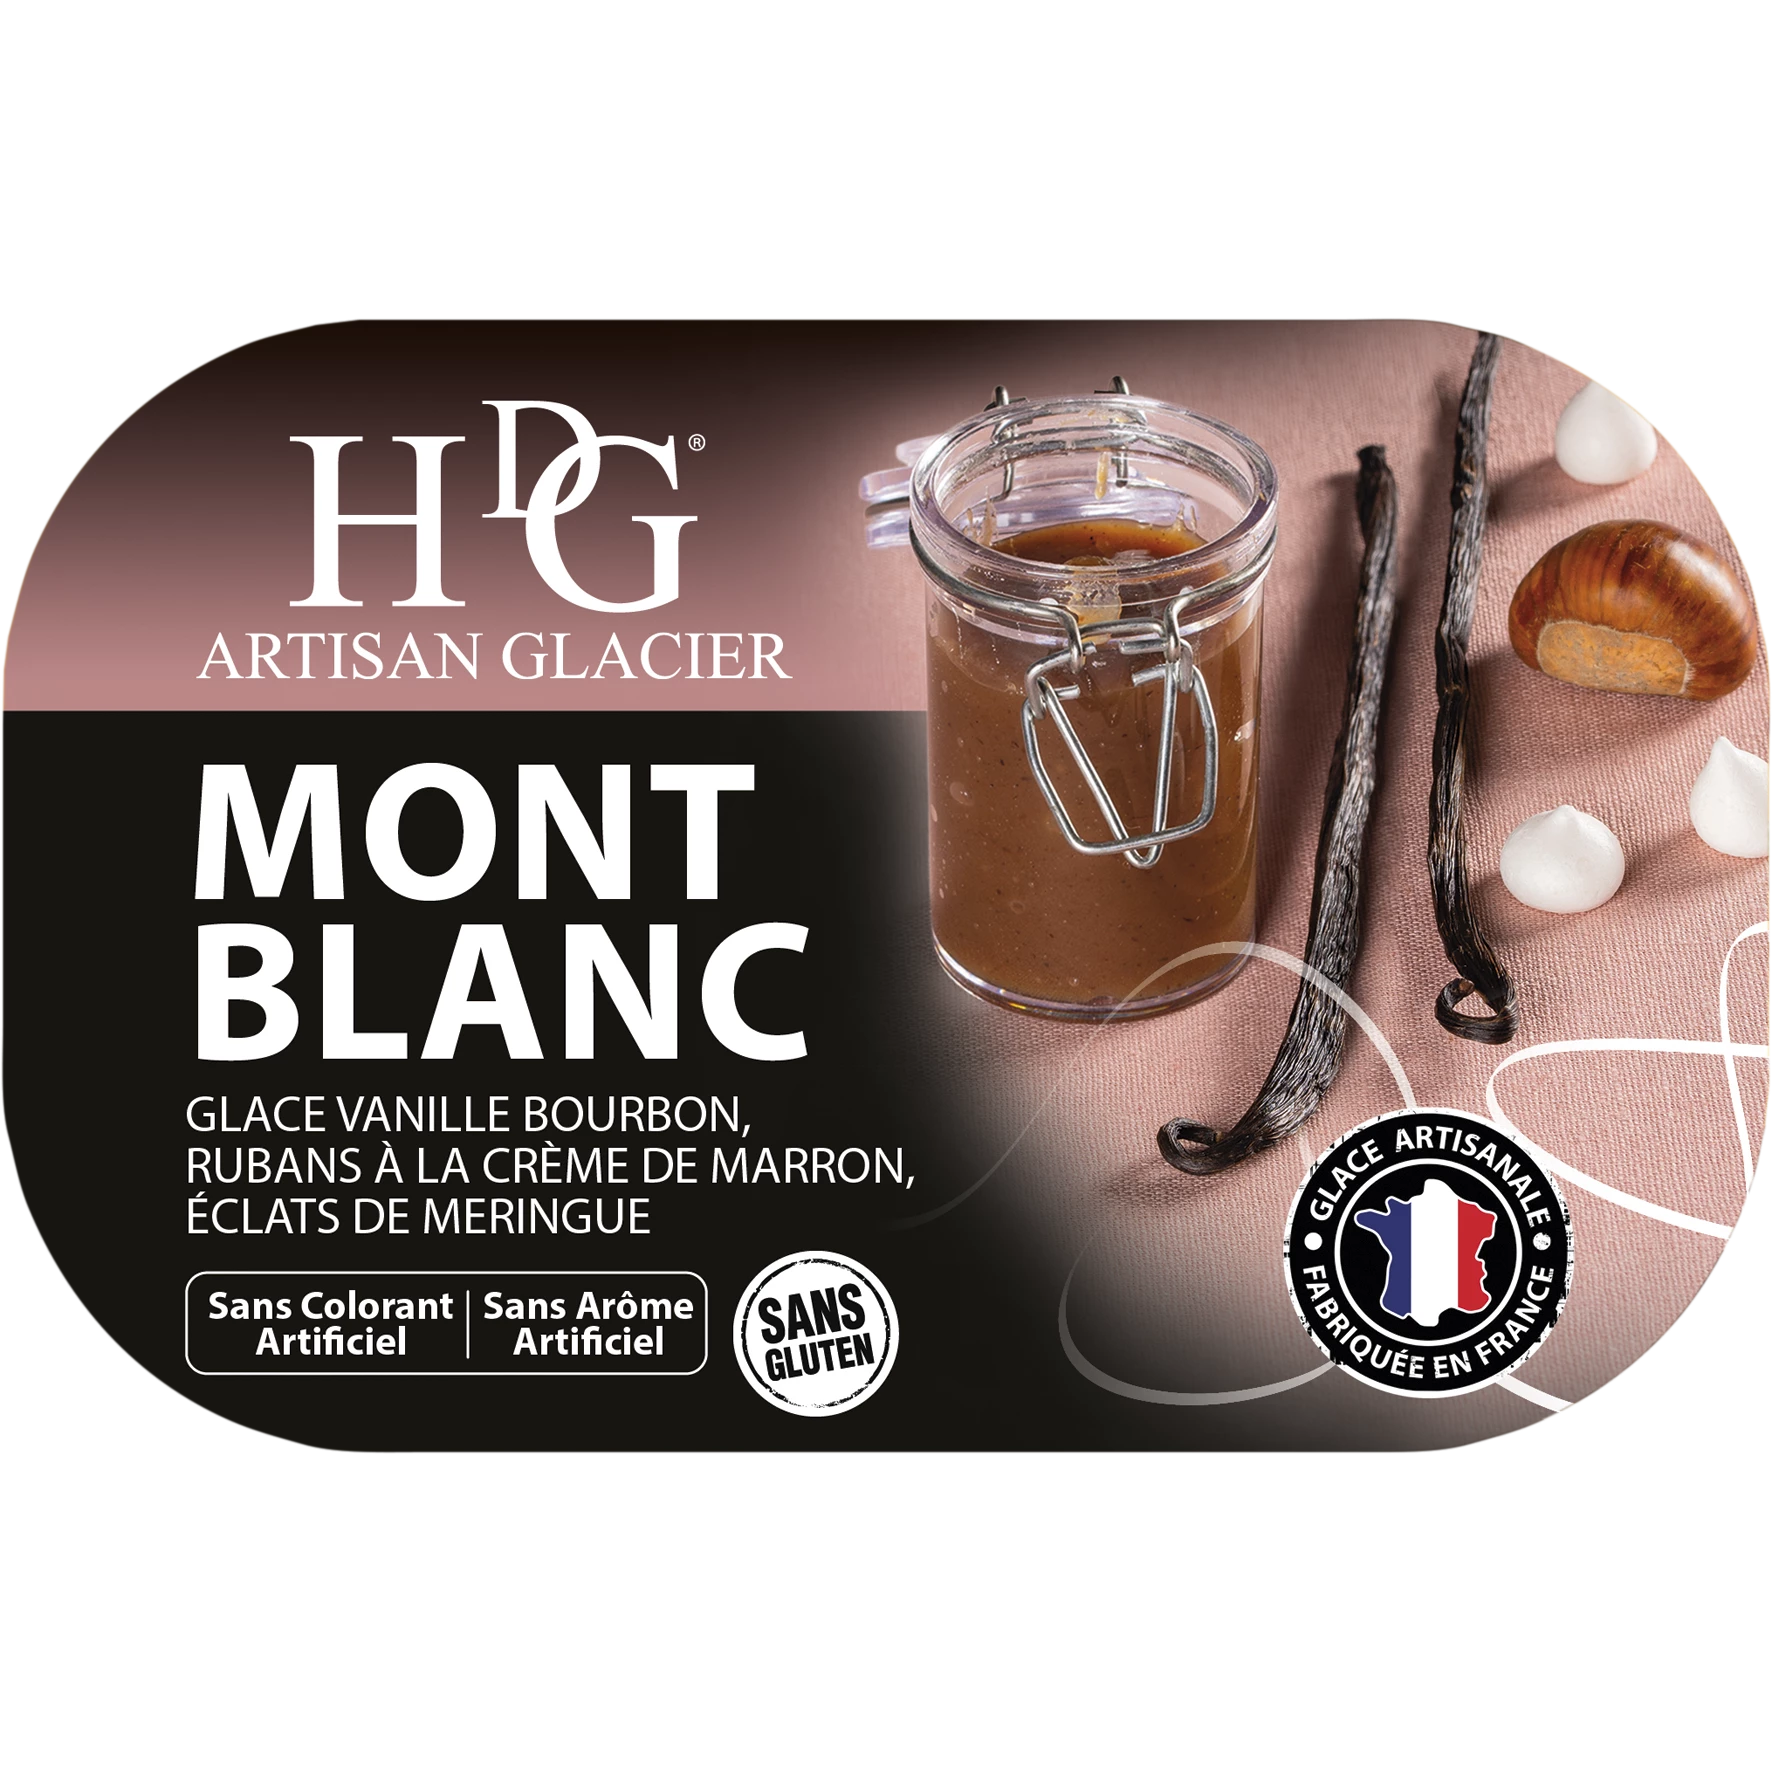 Мороженое Mont Blanc 487,5г - Истории мороженого